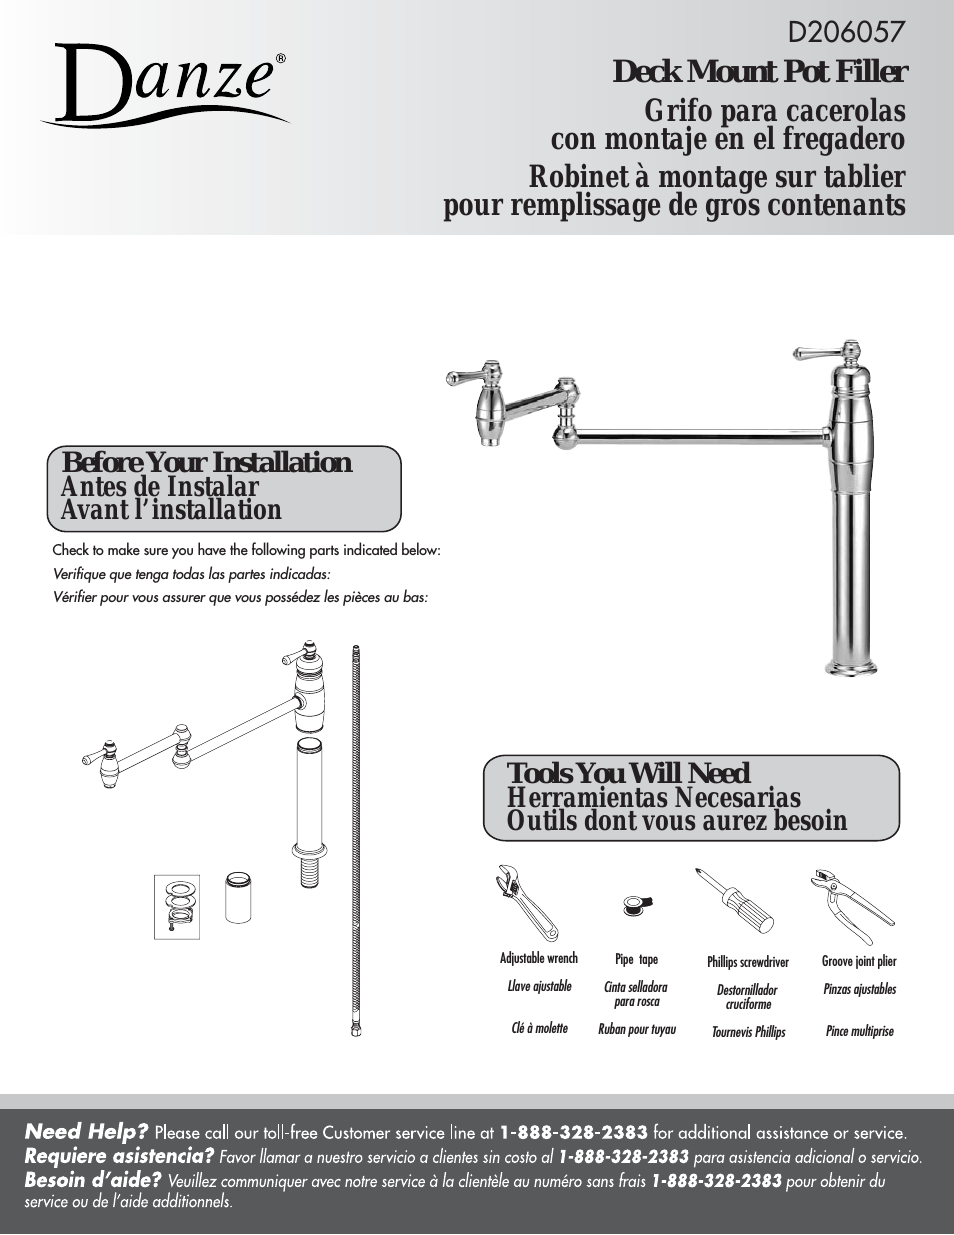 D206057 - Installation Manual